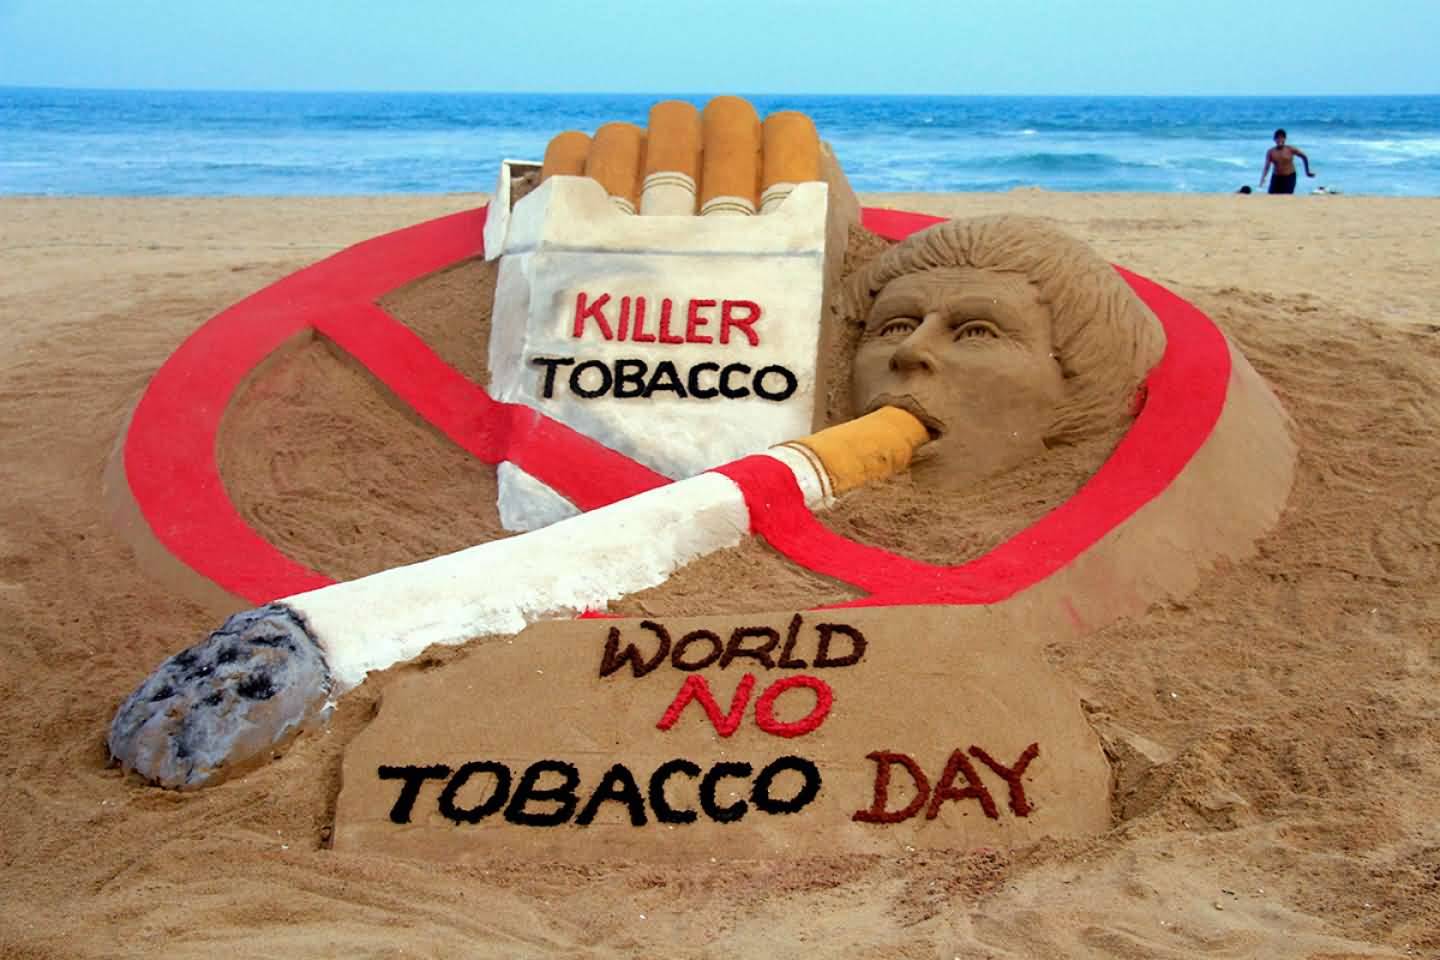 Killer Tobacco World No Tobacco Day Sand Art